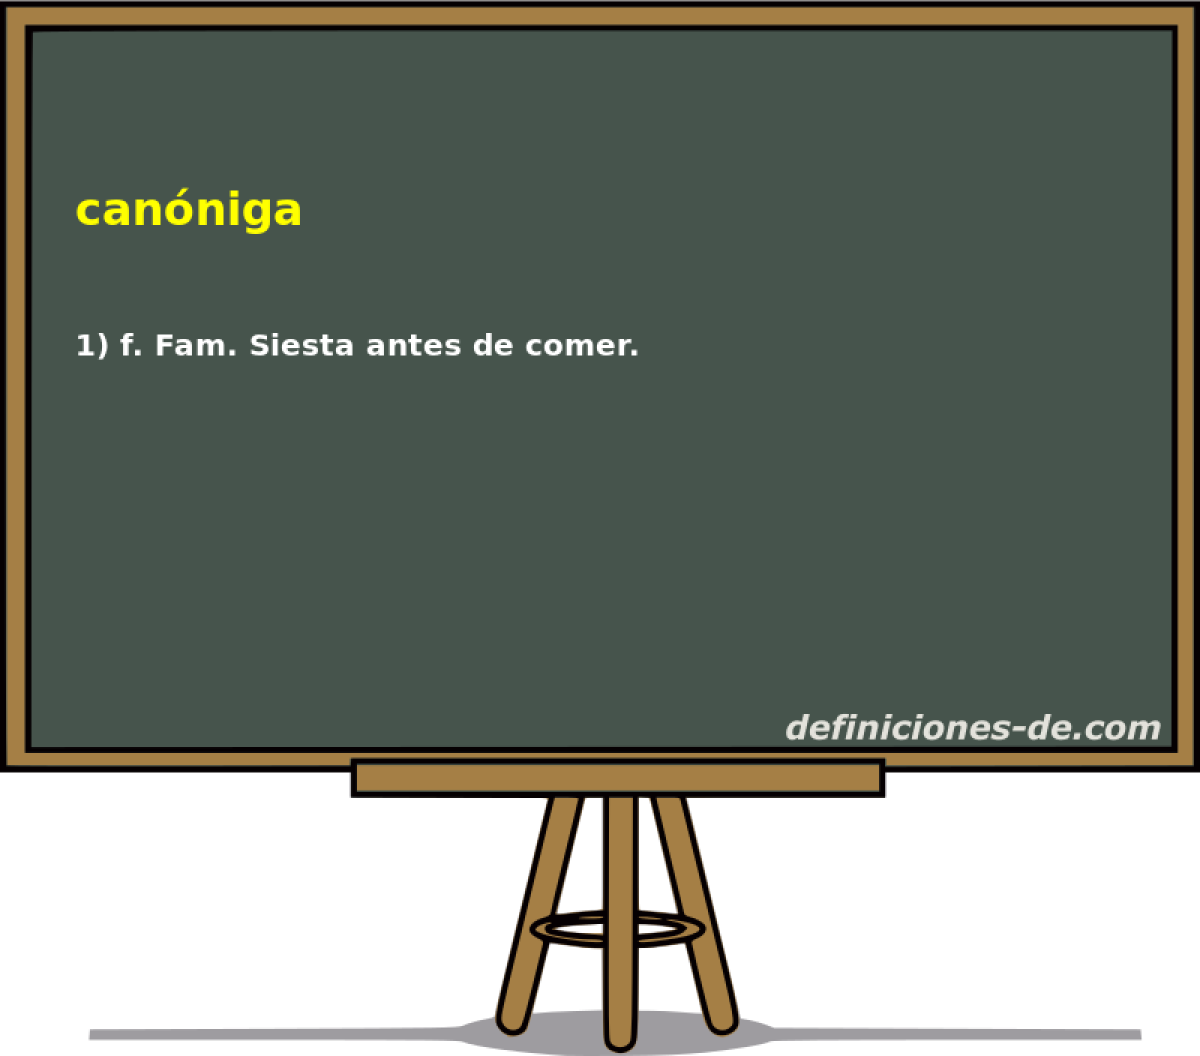 canniga 